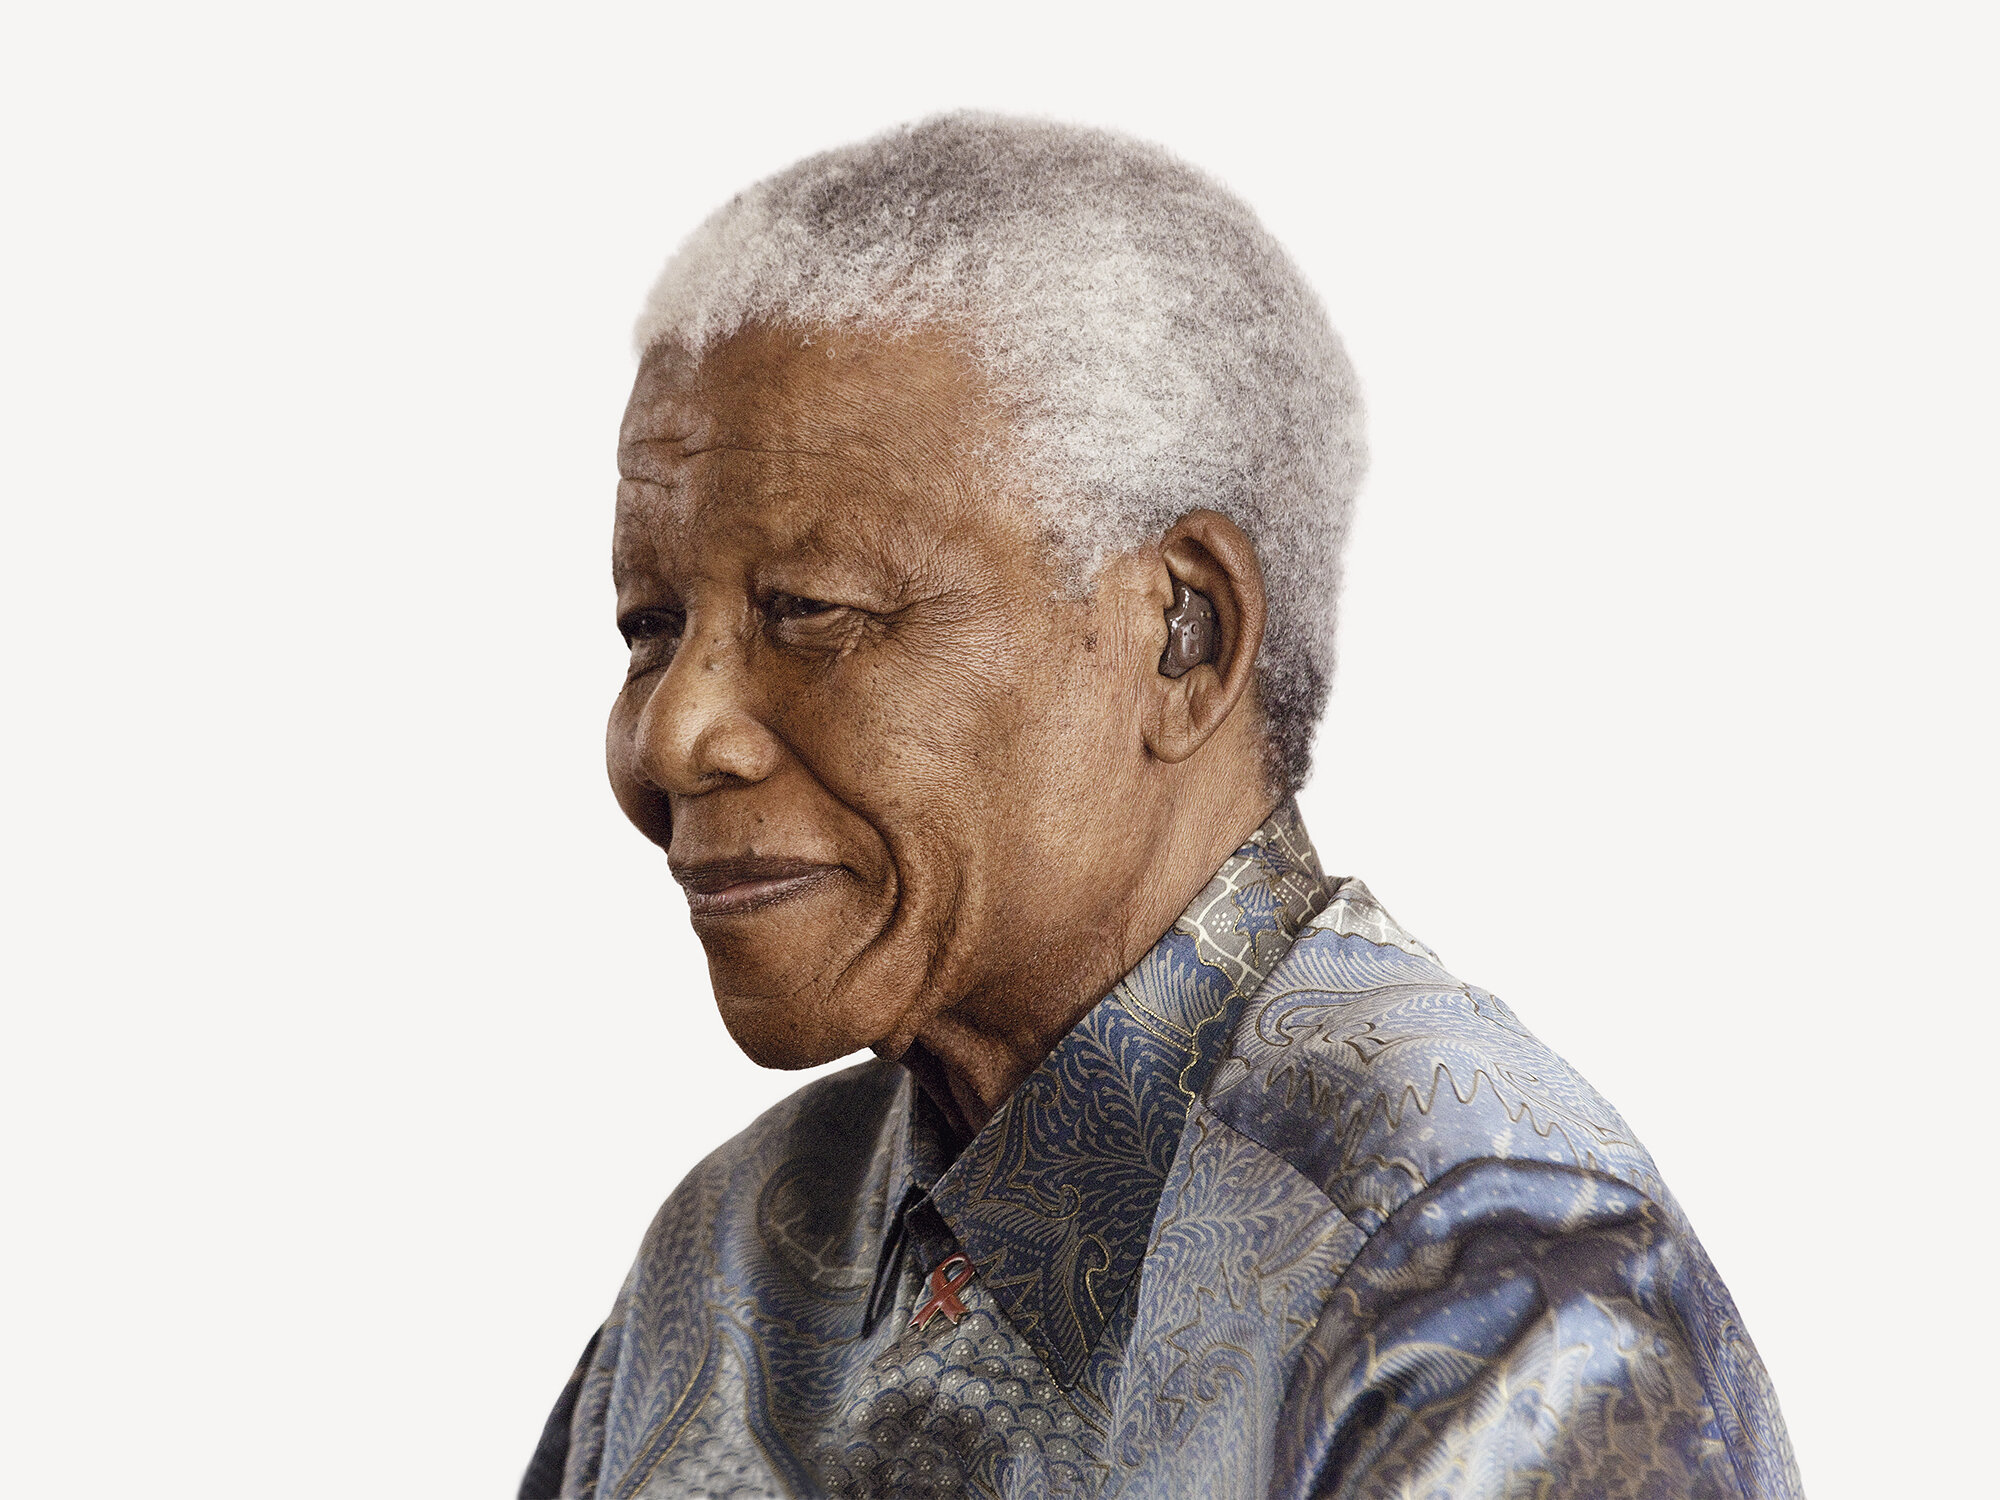 Also available – Nelson Mandela: Guiding Principles